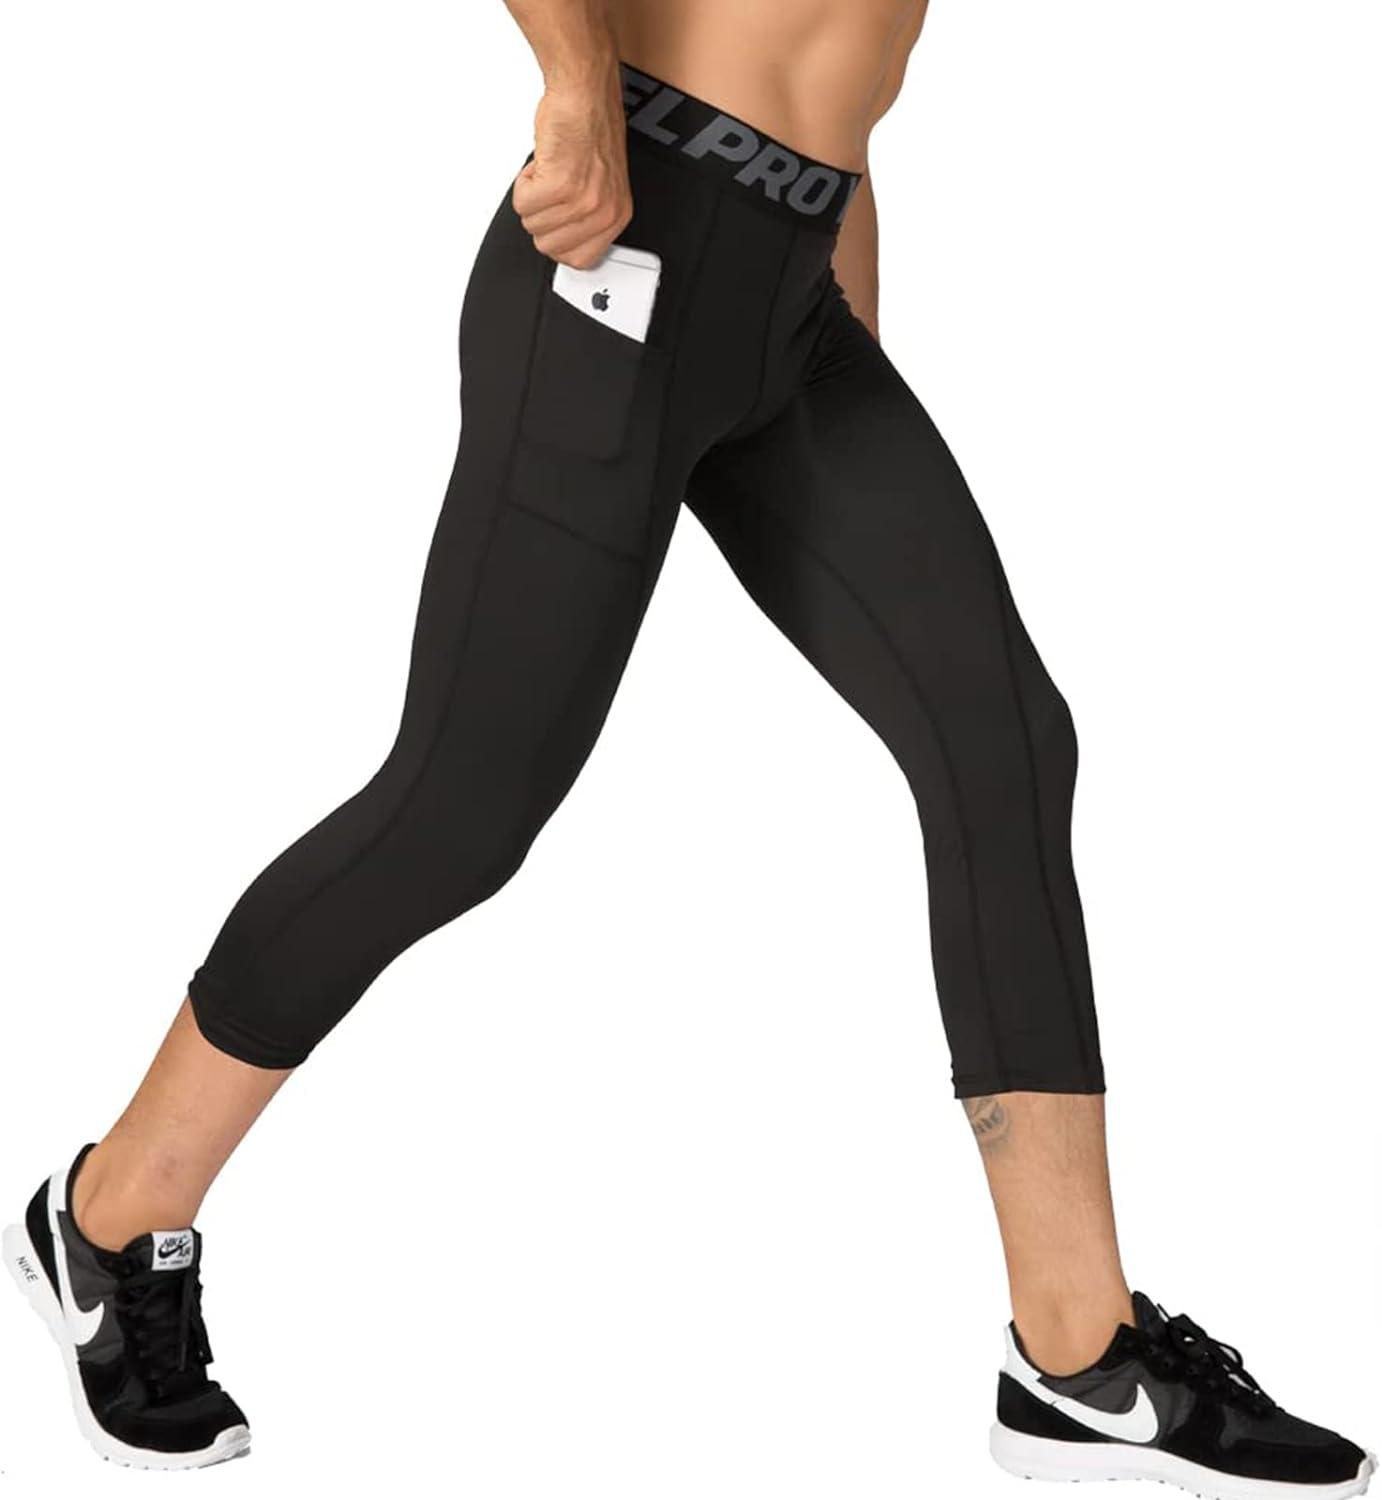 Lululemon Size 4 Black And White Marbled Pattern Athletic Leggings, Mesh On  Bott | eBay